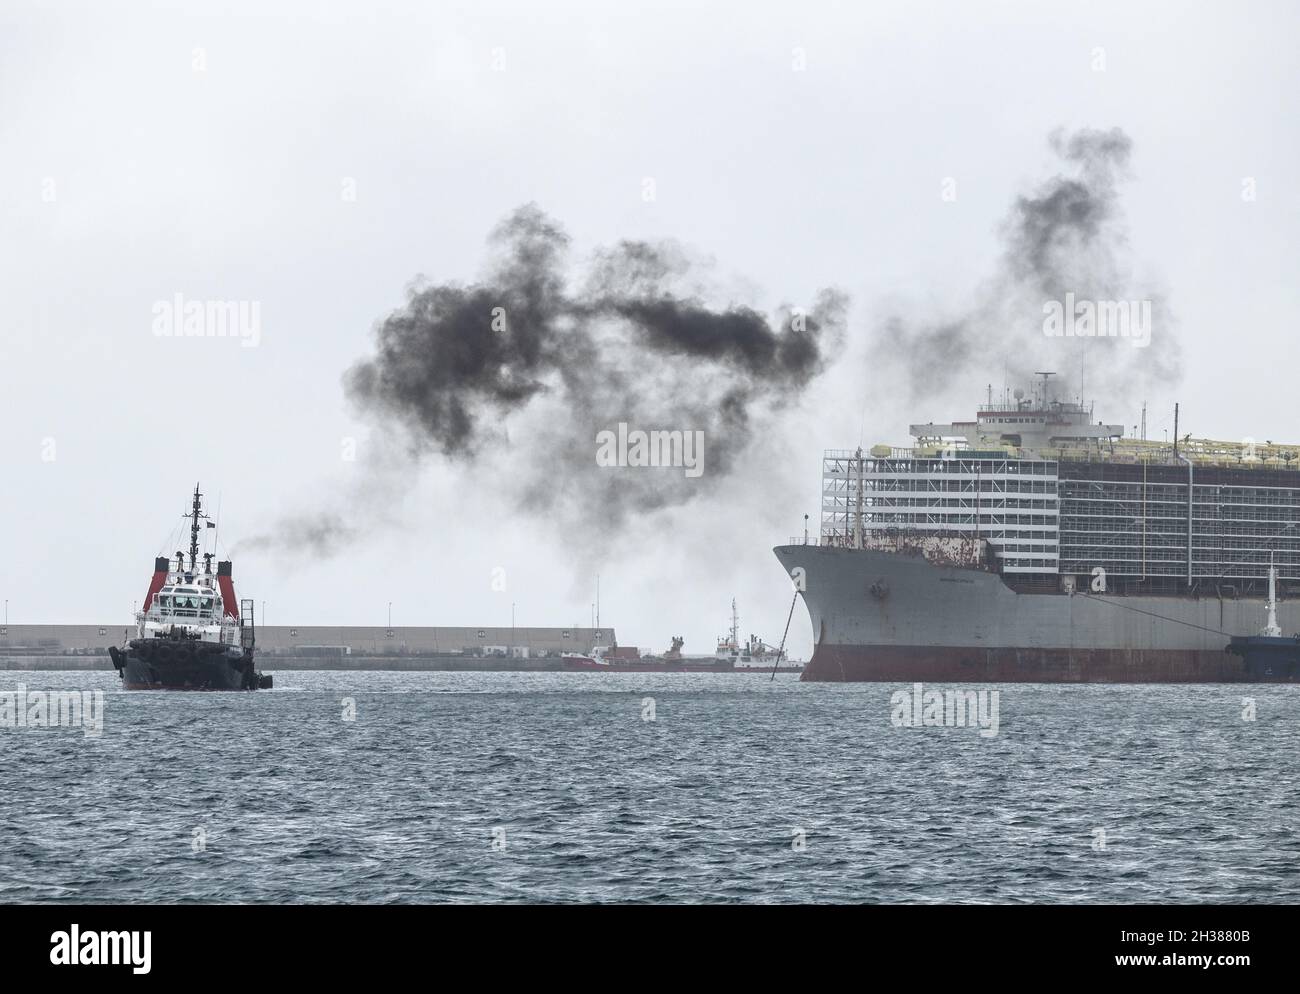 Großes Handelsschiff, das Vieh/Rinder mit einem Schleppboot transportiert, das schwarzen Rauch aufstabt. Stockfoto